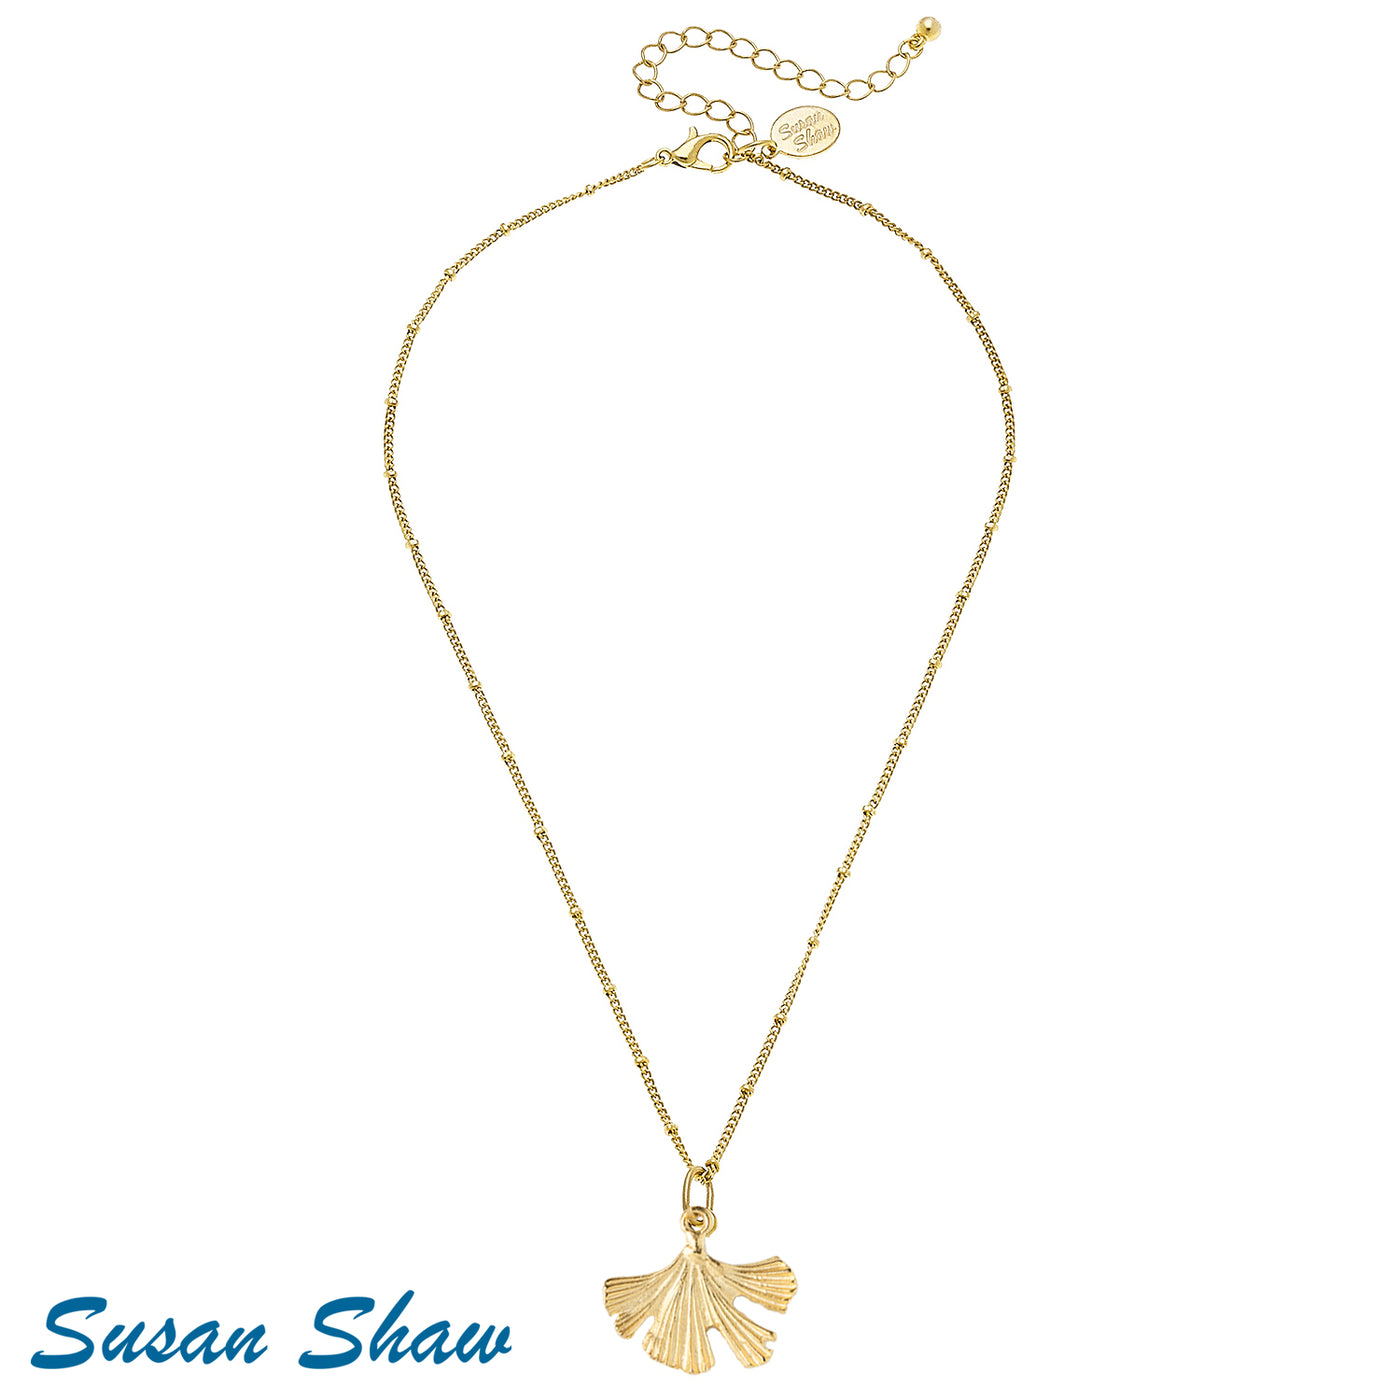 Susan Shaw Dainty Ginkgo Leaf Necklace